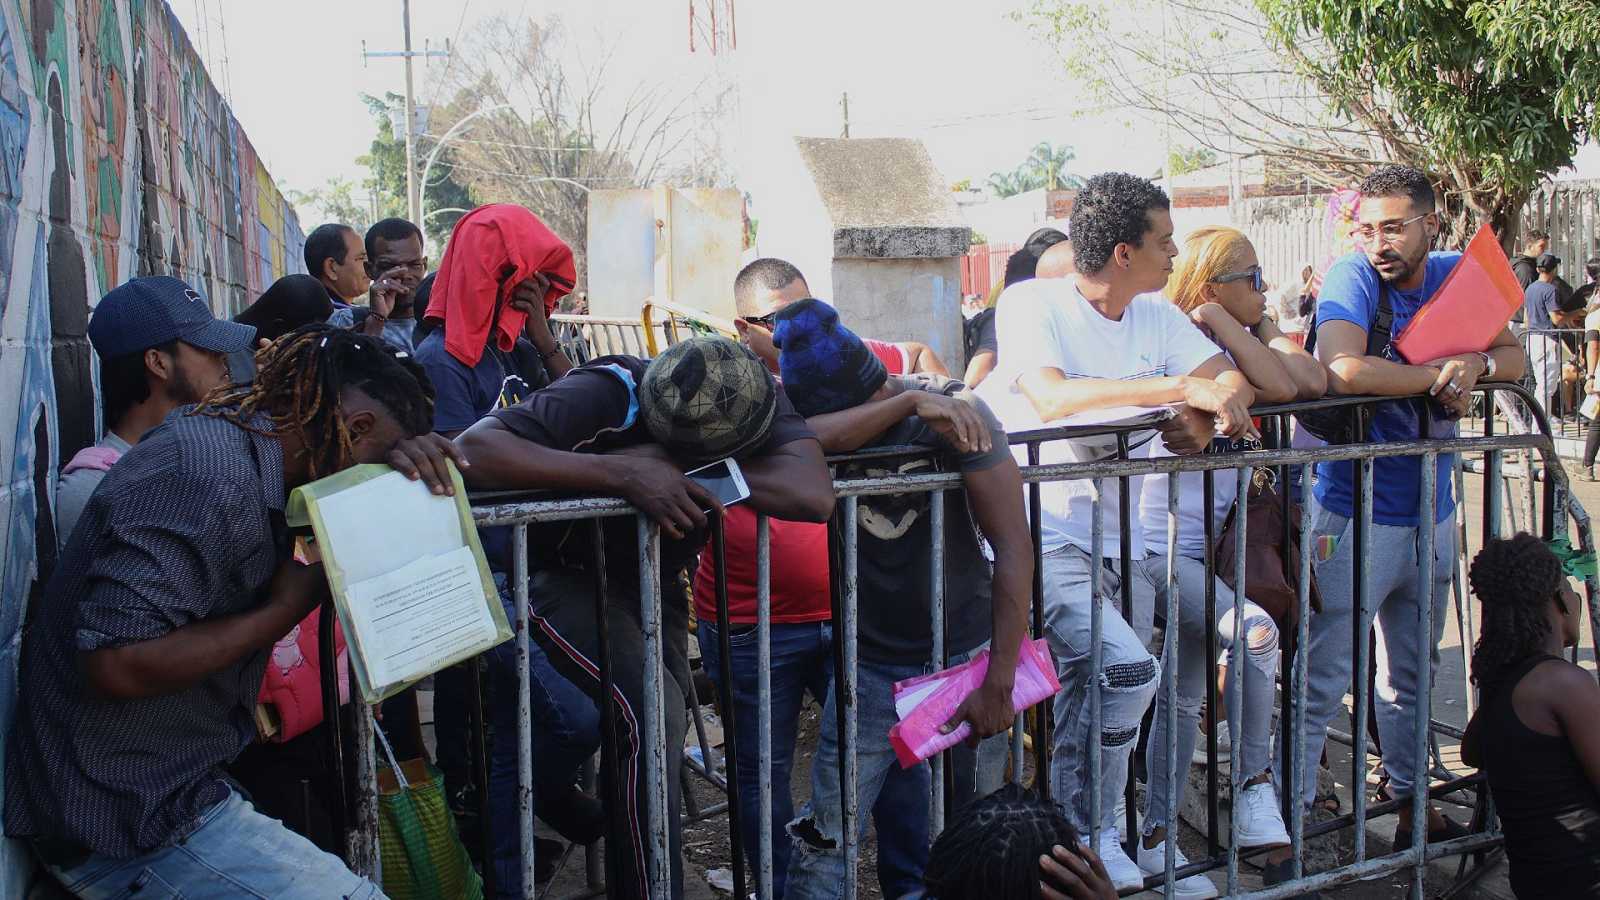 Miles de migrantes acceden a centros de procesamiento en Colombia, Guatemala y Costa Rica según el Departamento de Estado de EE. UU.